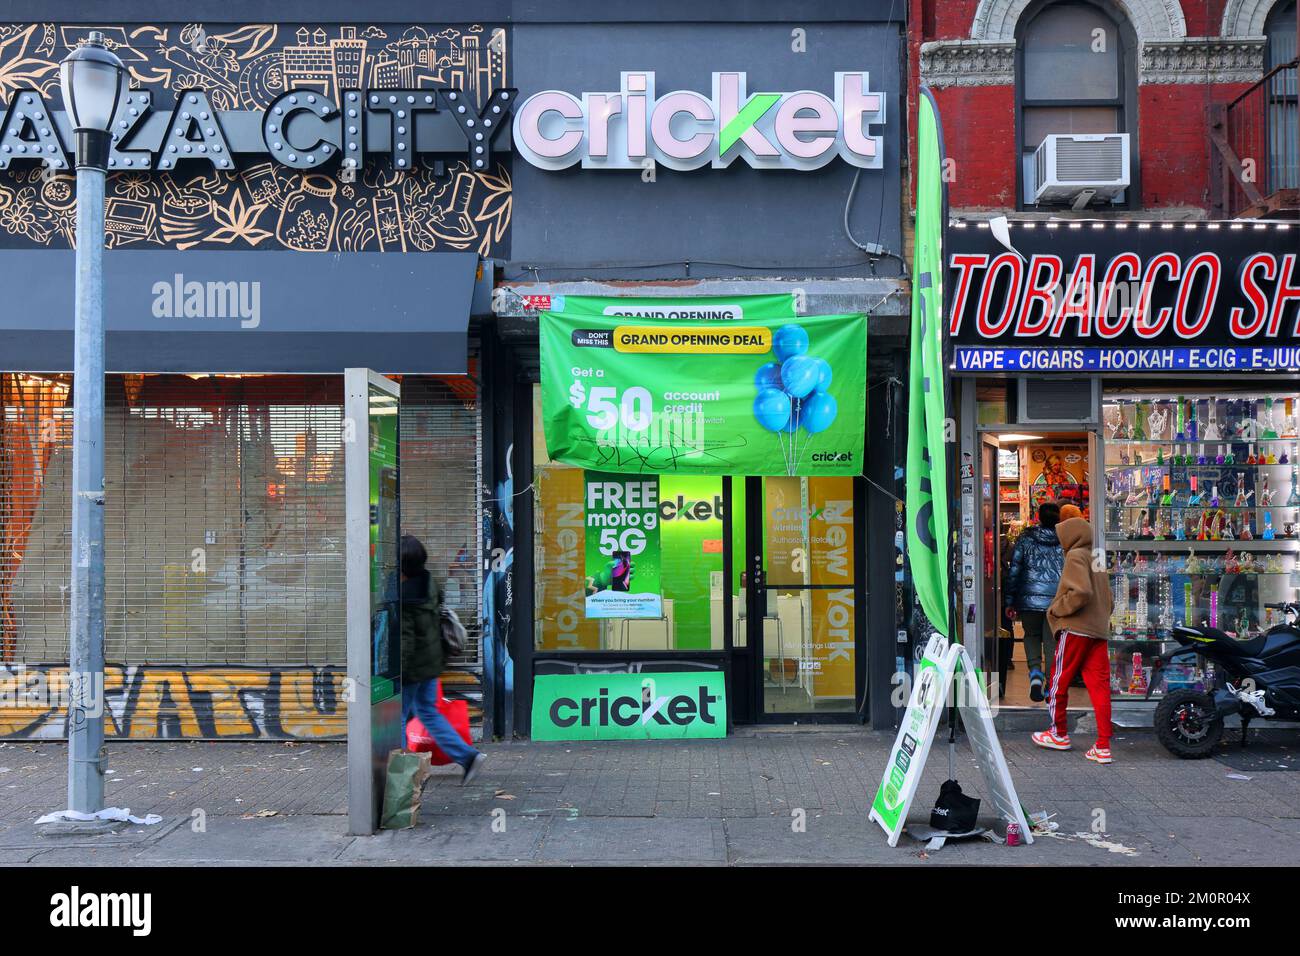 Cricket Wireless, 109 Clinton St, Nueva York, Nueva York, Nueva York, foto del escaparate de un proveedor de telefonía celular en el Lower East Side de Manhattan. Foto de stock